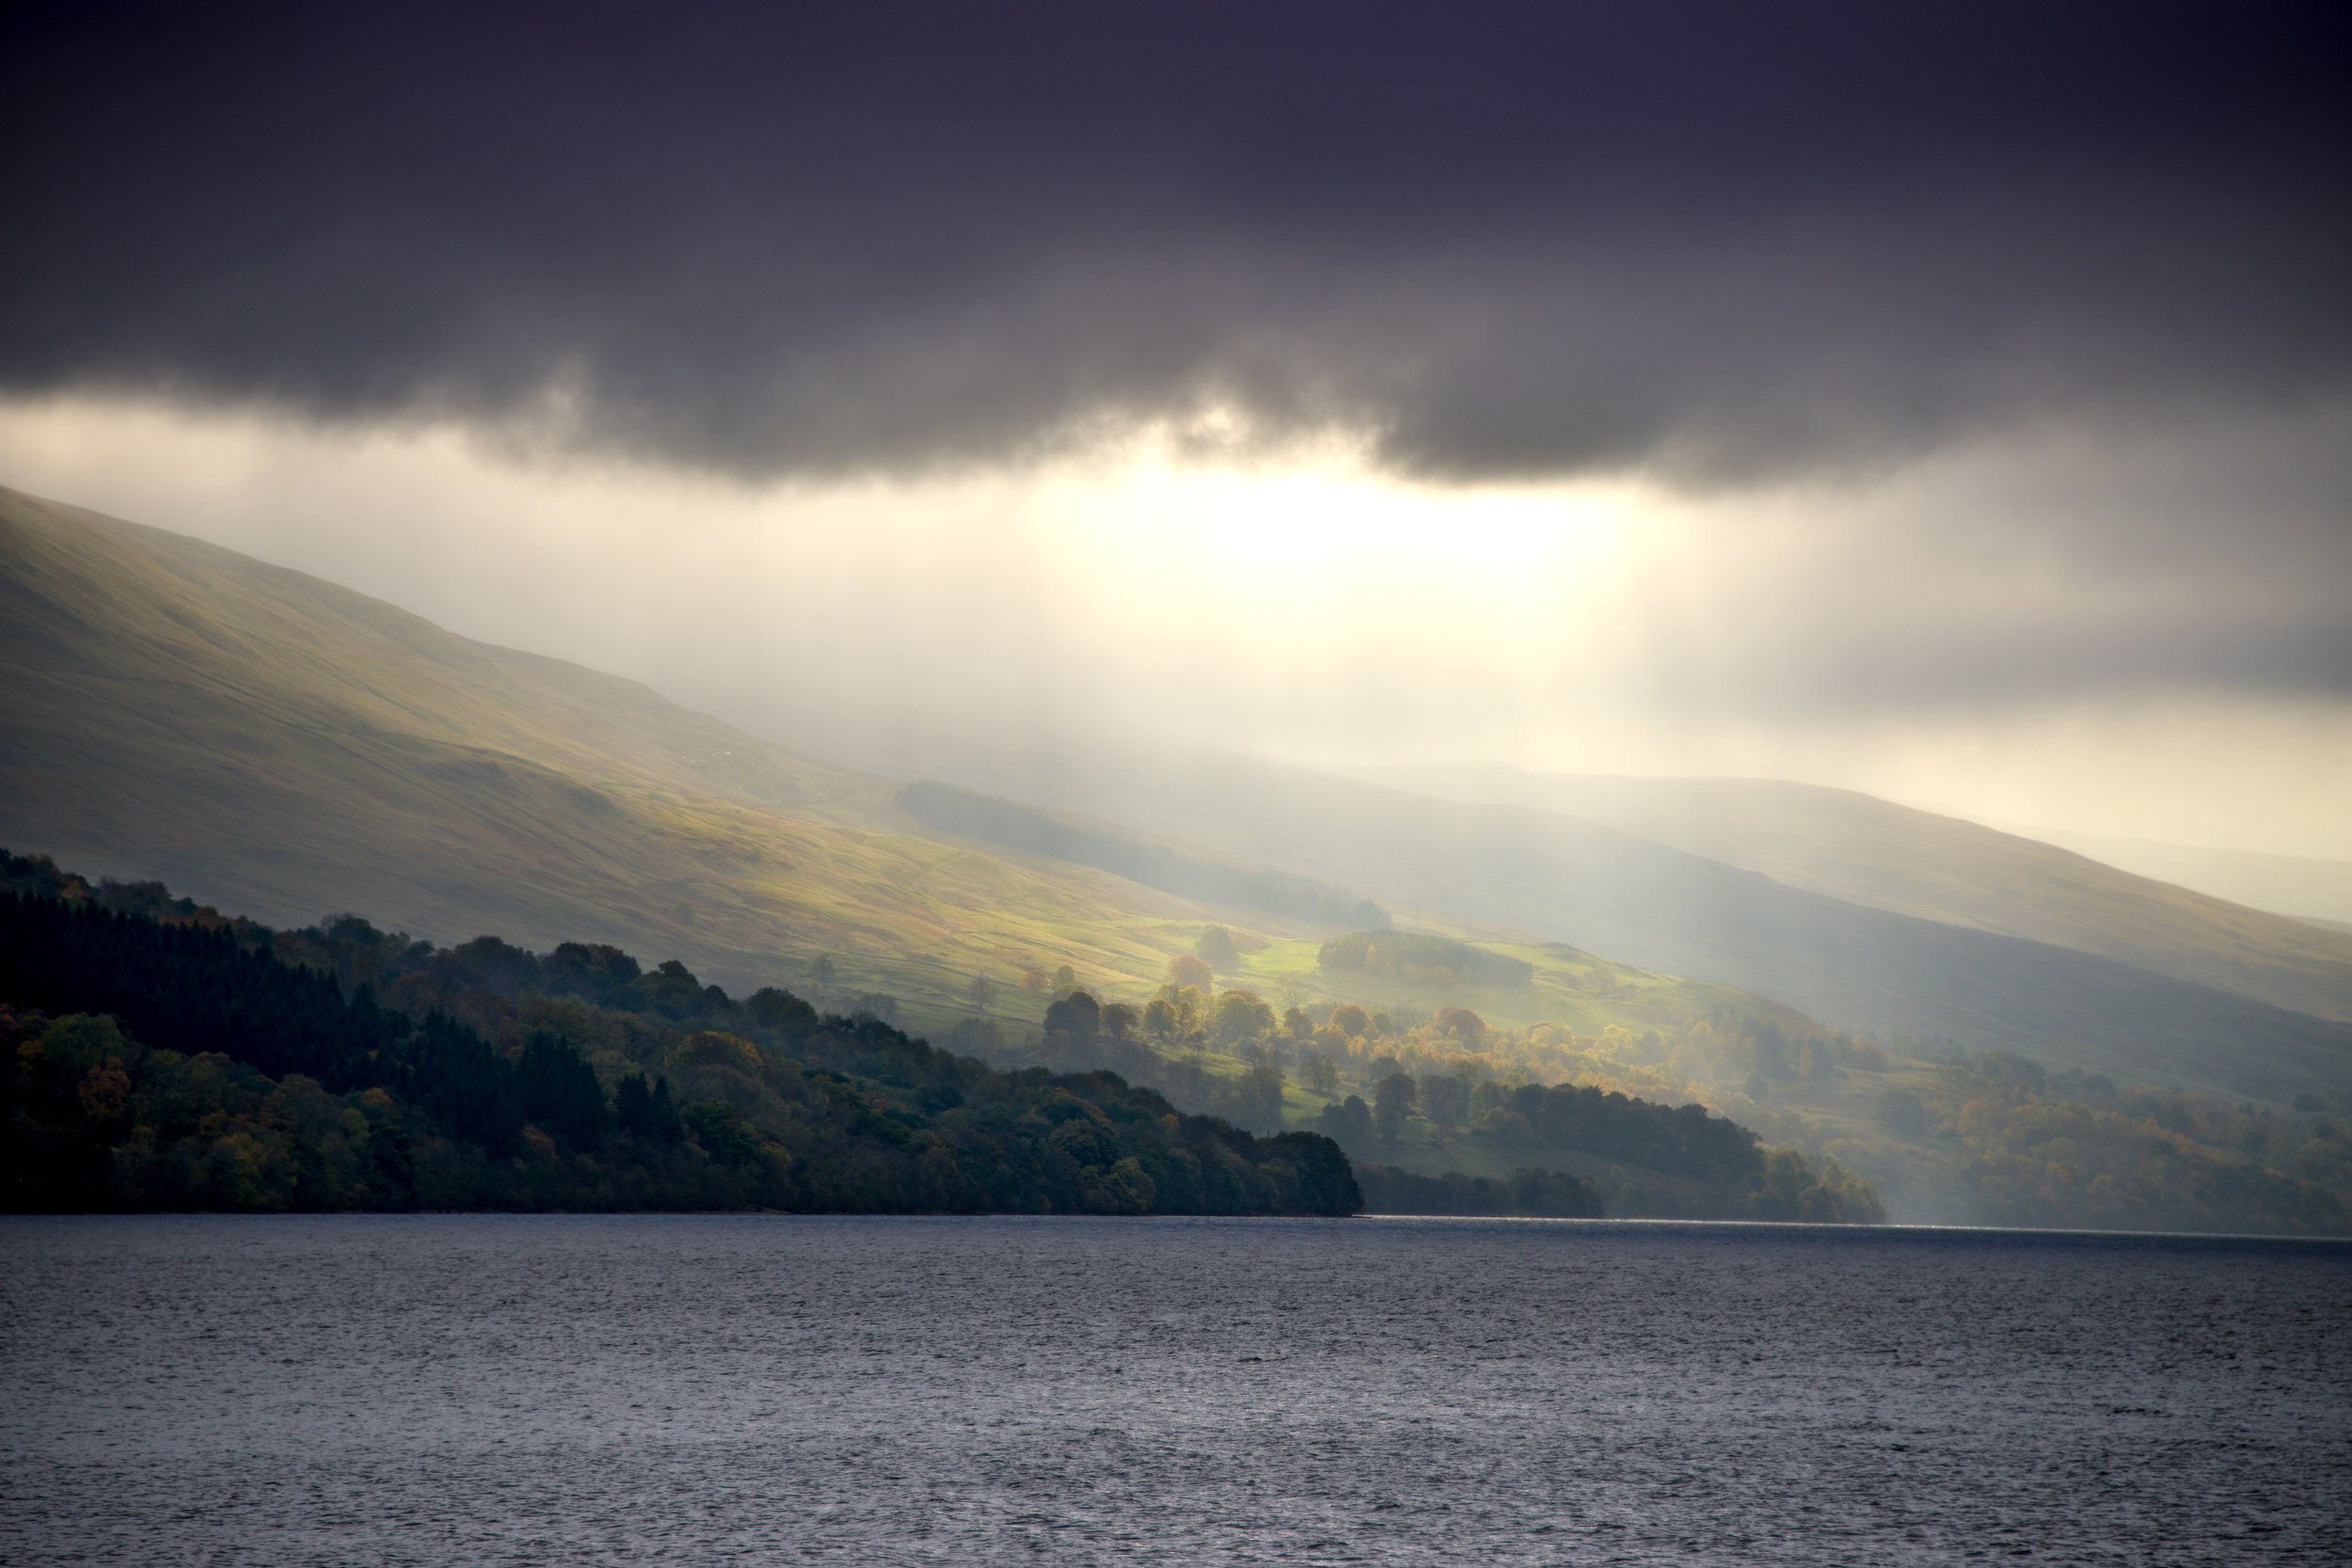 Loch Tay, Scotland